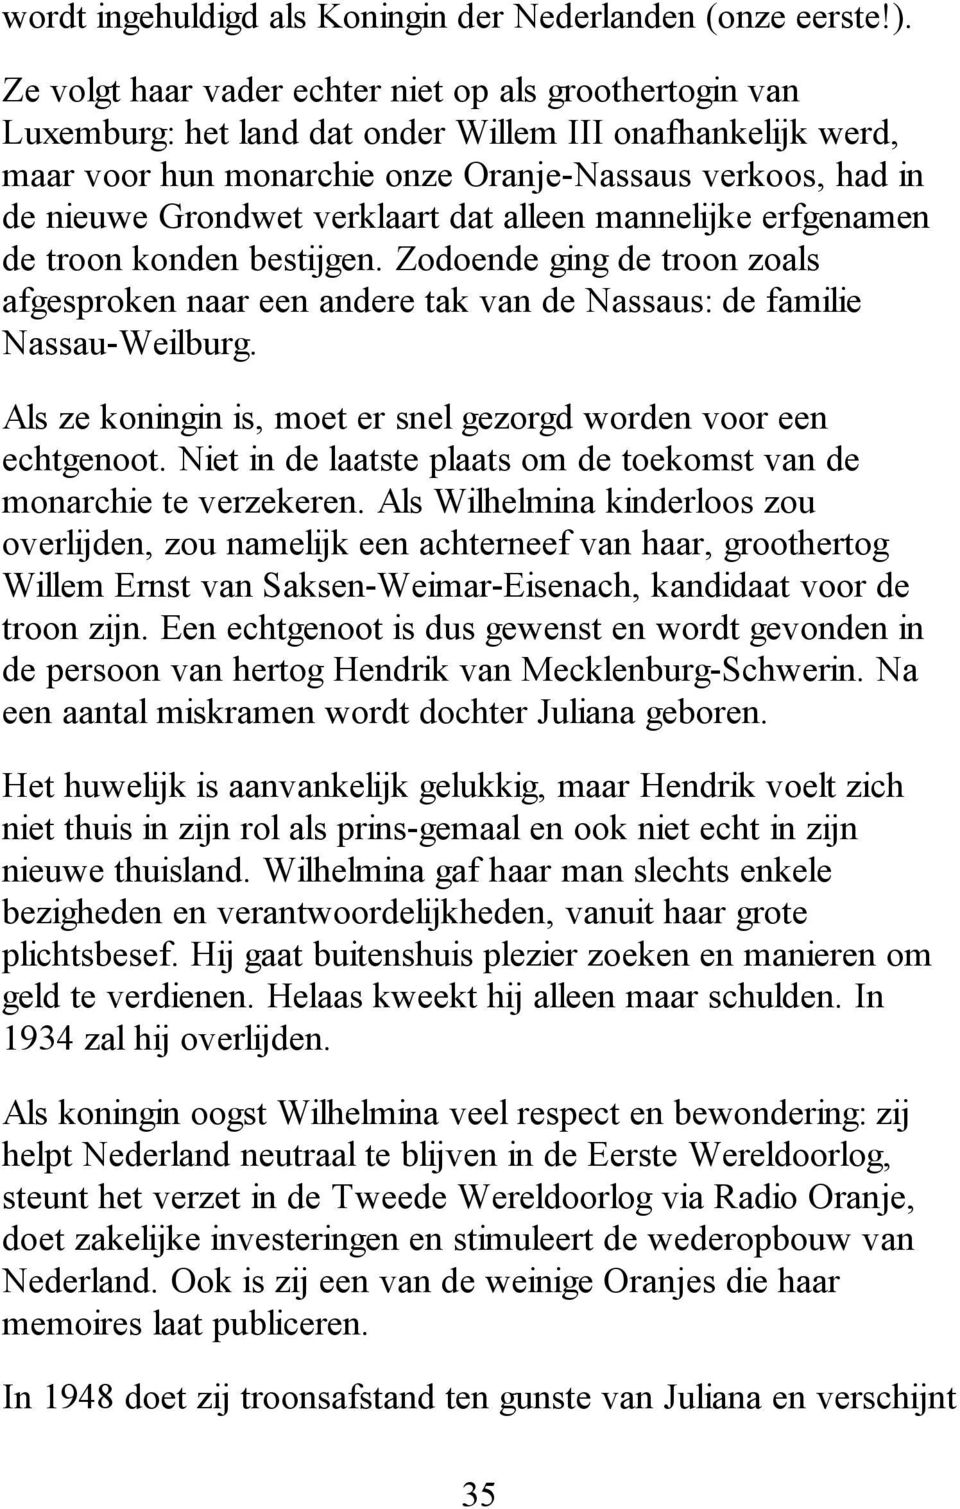 verklaart dat alleen mannelijke erfgenamen de troon konden bestijgen. Zodoende ging de troon zoals afgesproken naar een andere tak van de Nassaus: de familie Nassau-Weilburg.